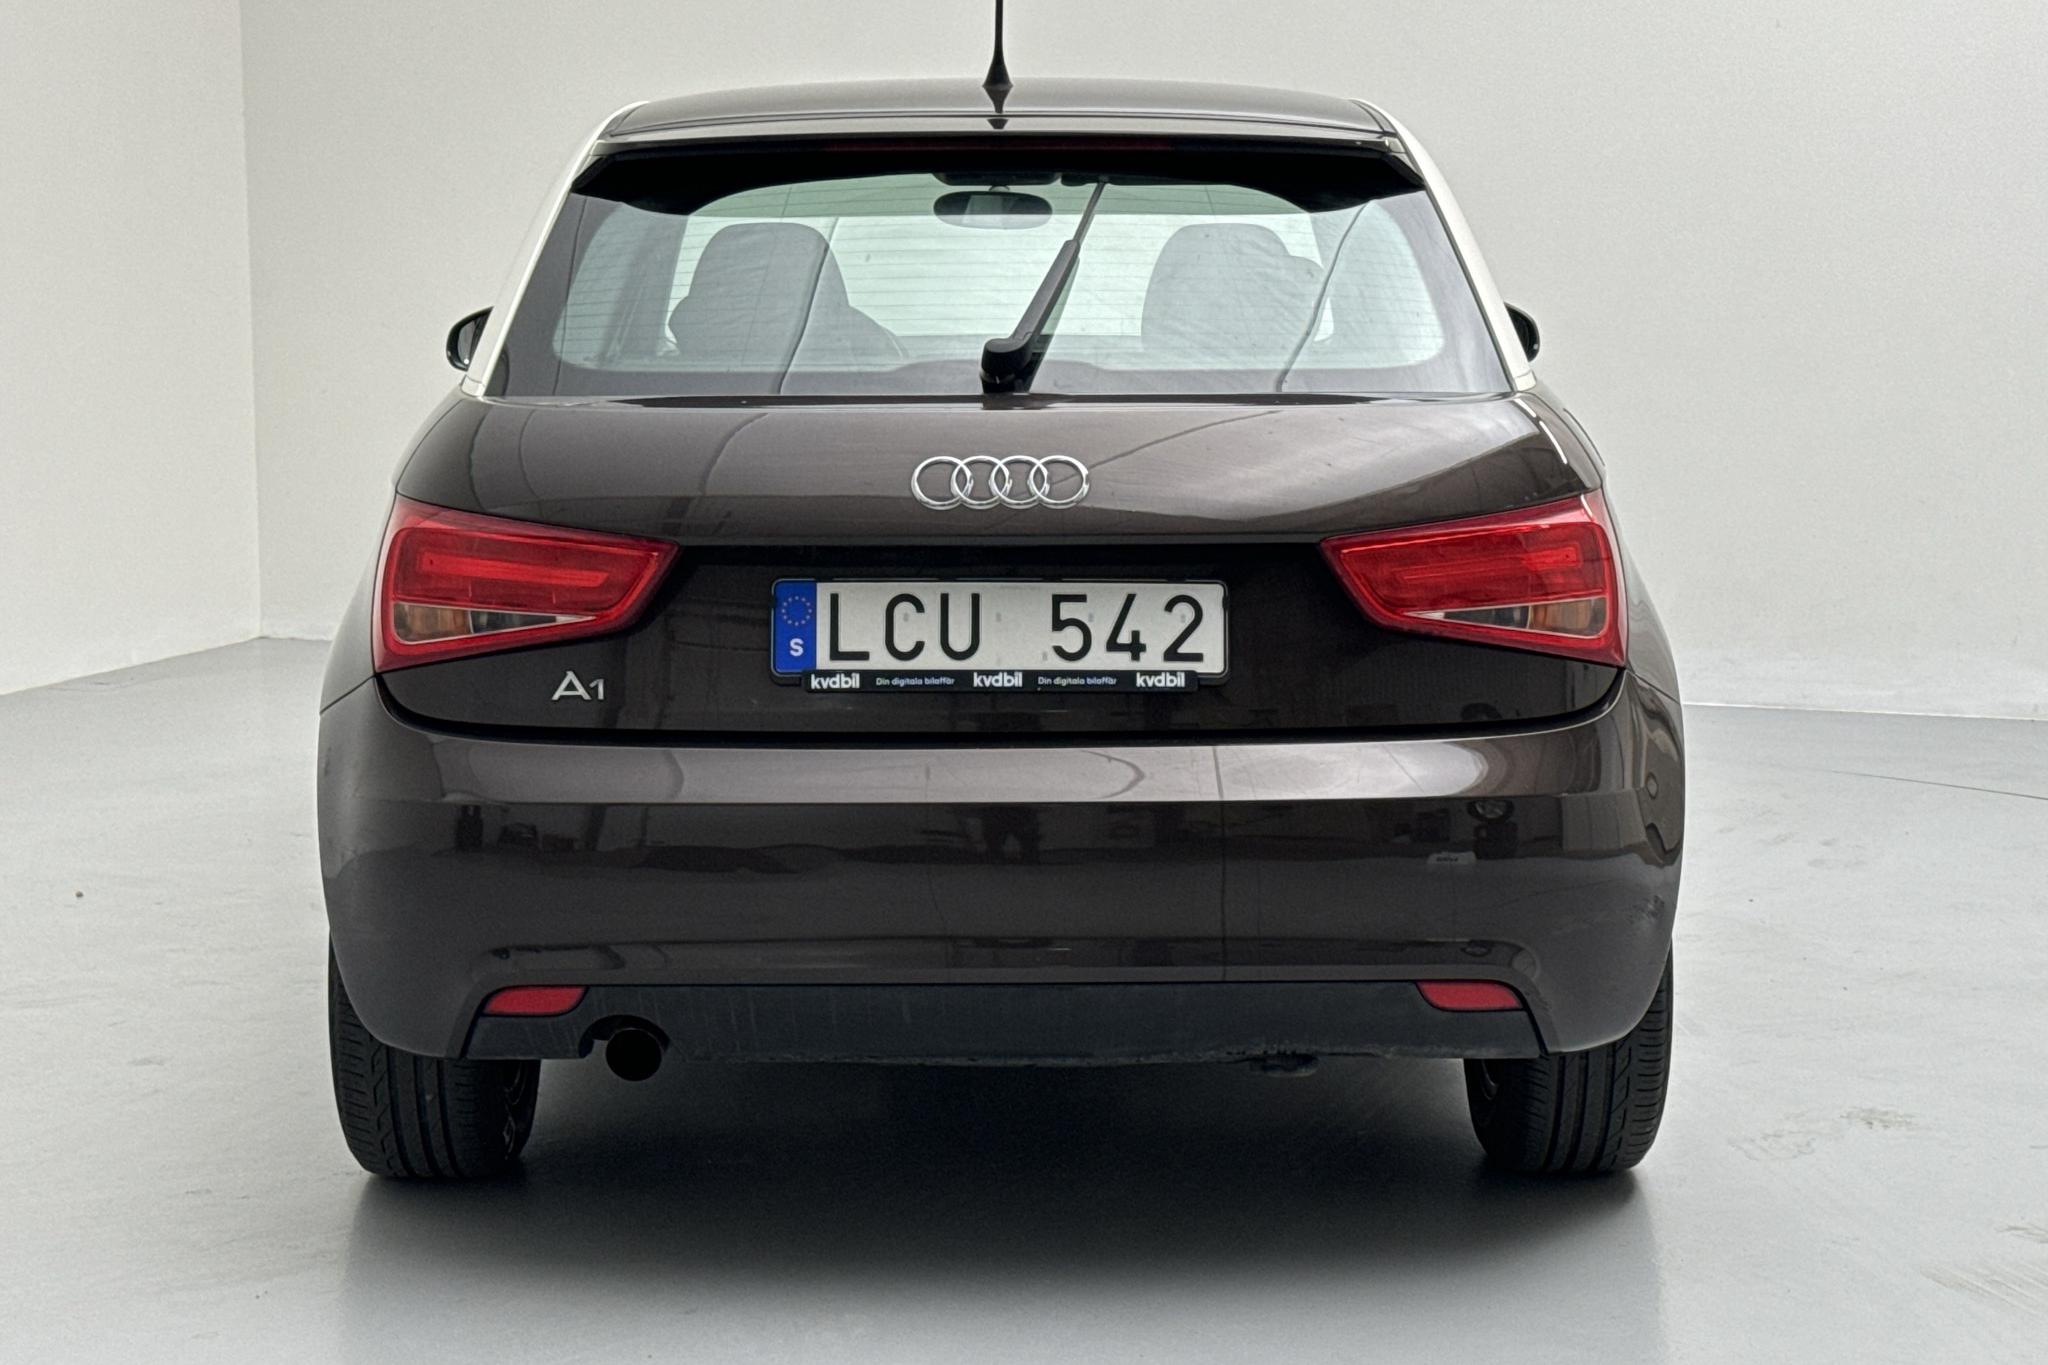 Audi A1 1.2 TFSI (86hk) - 105 190 km - Manual - brown - 2011